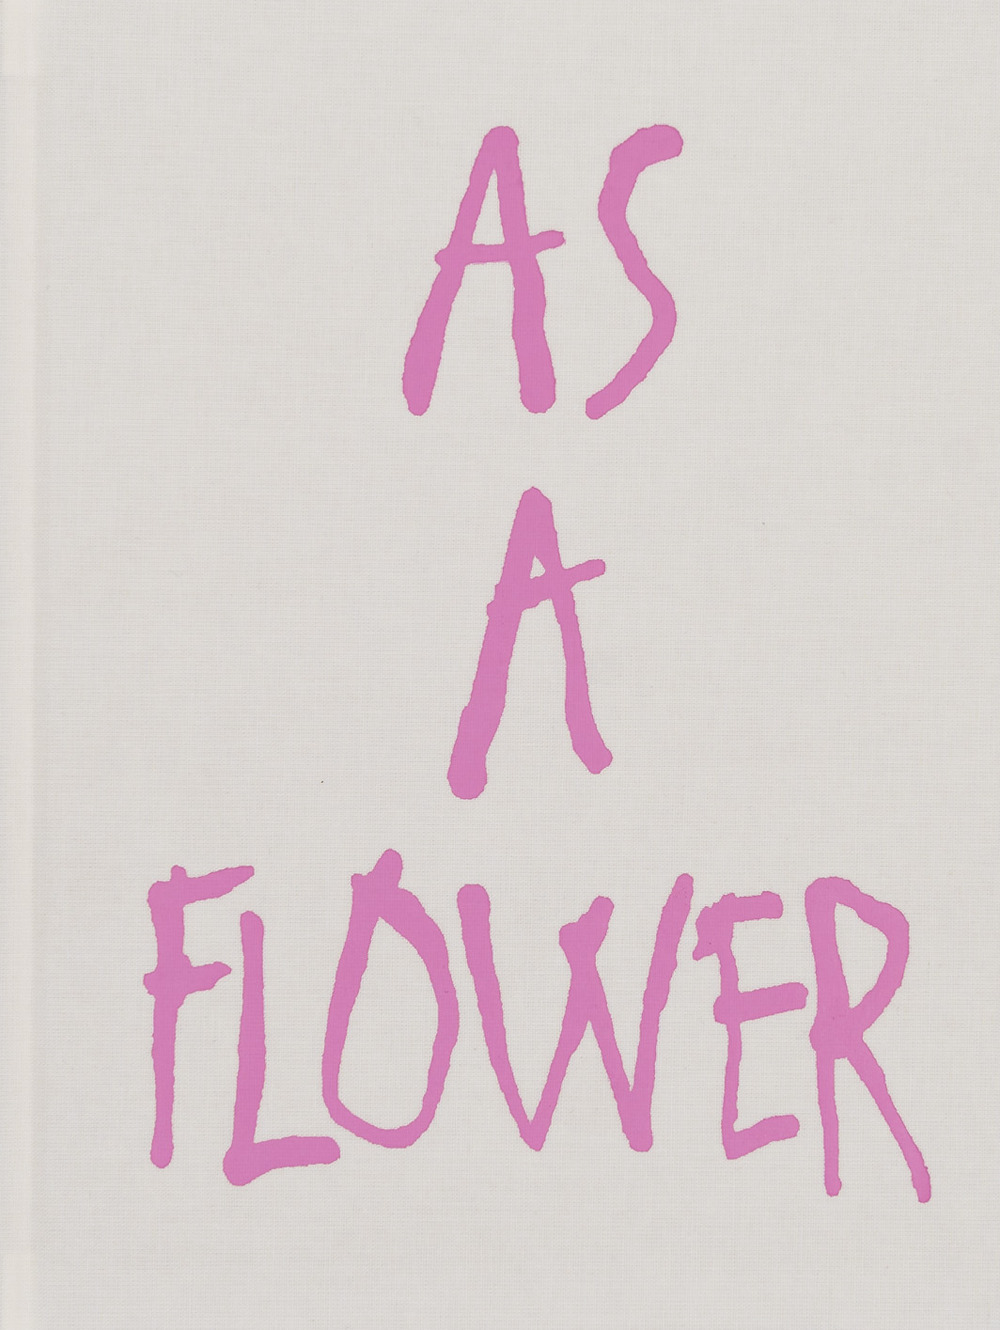 As a flower. Ediz. illustrata